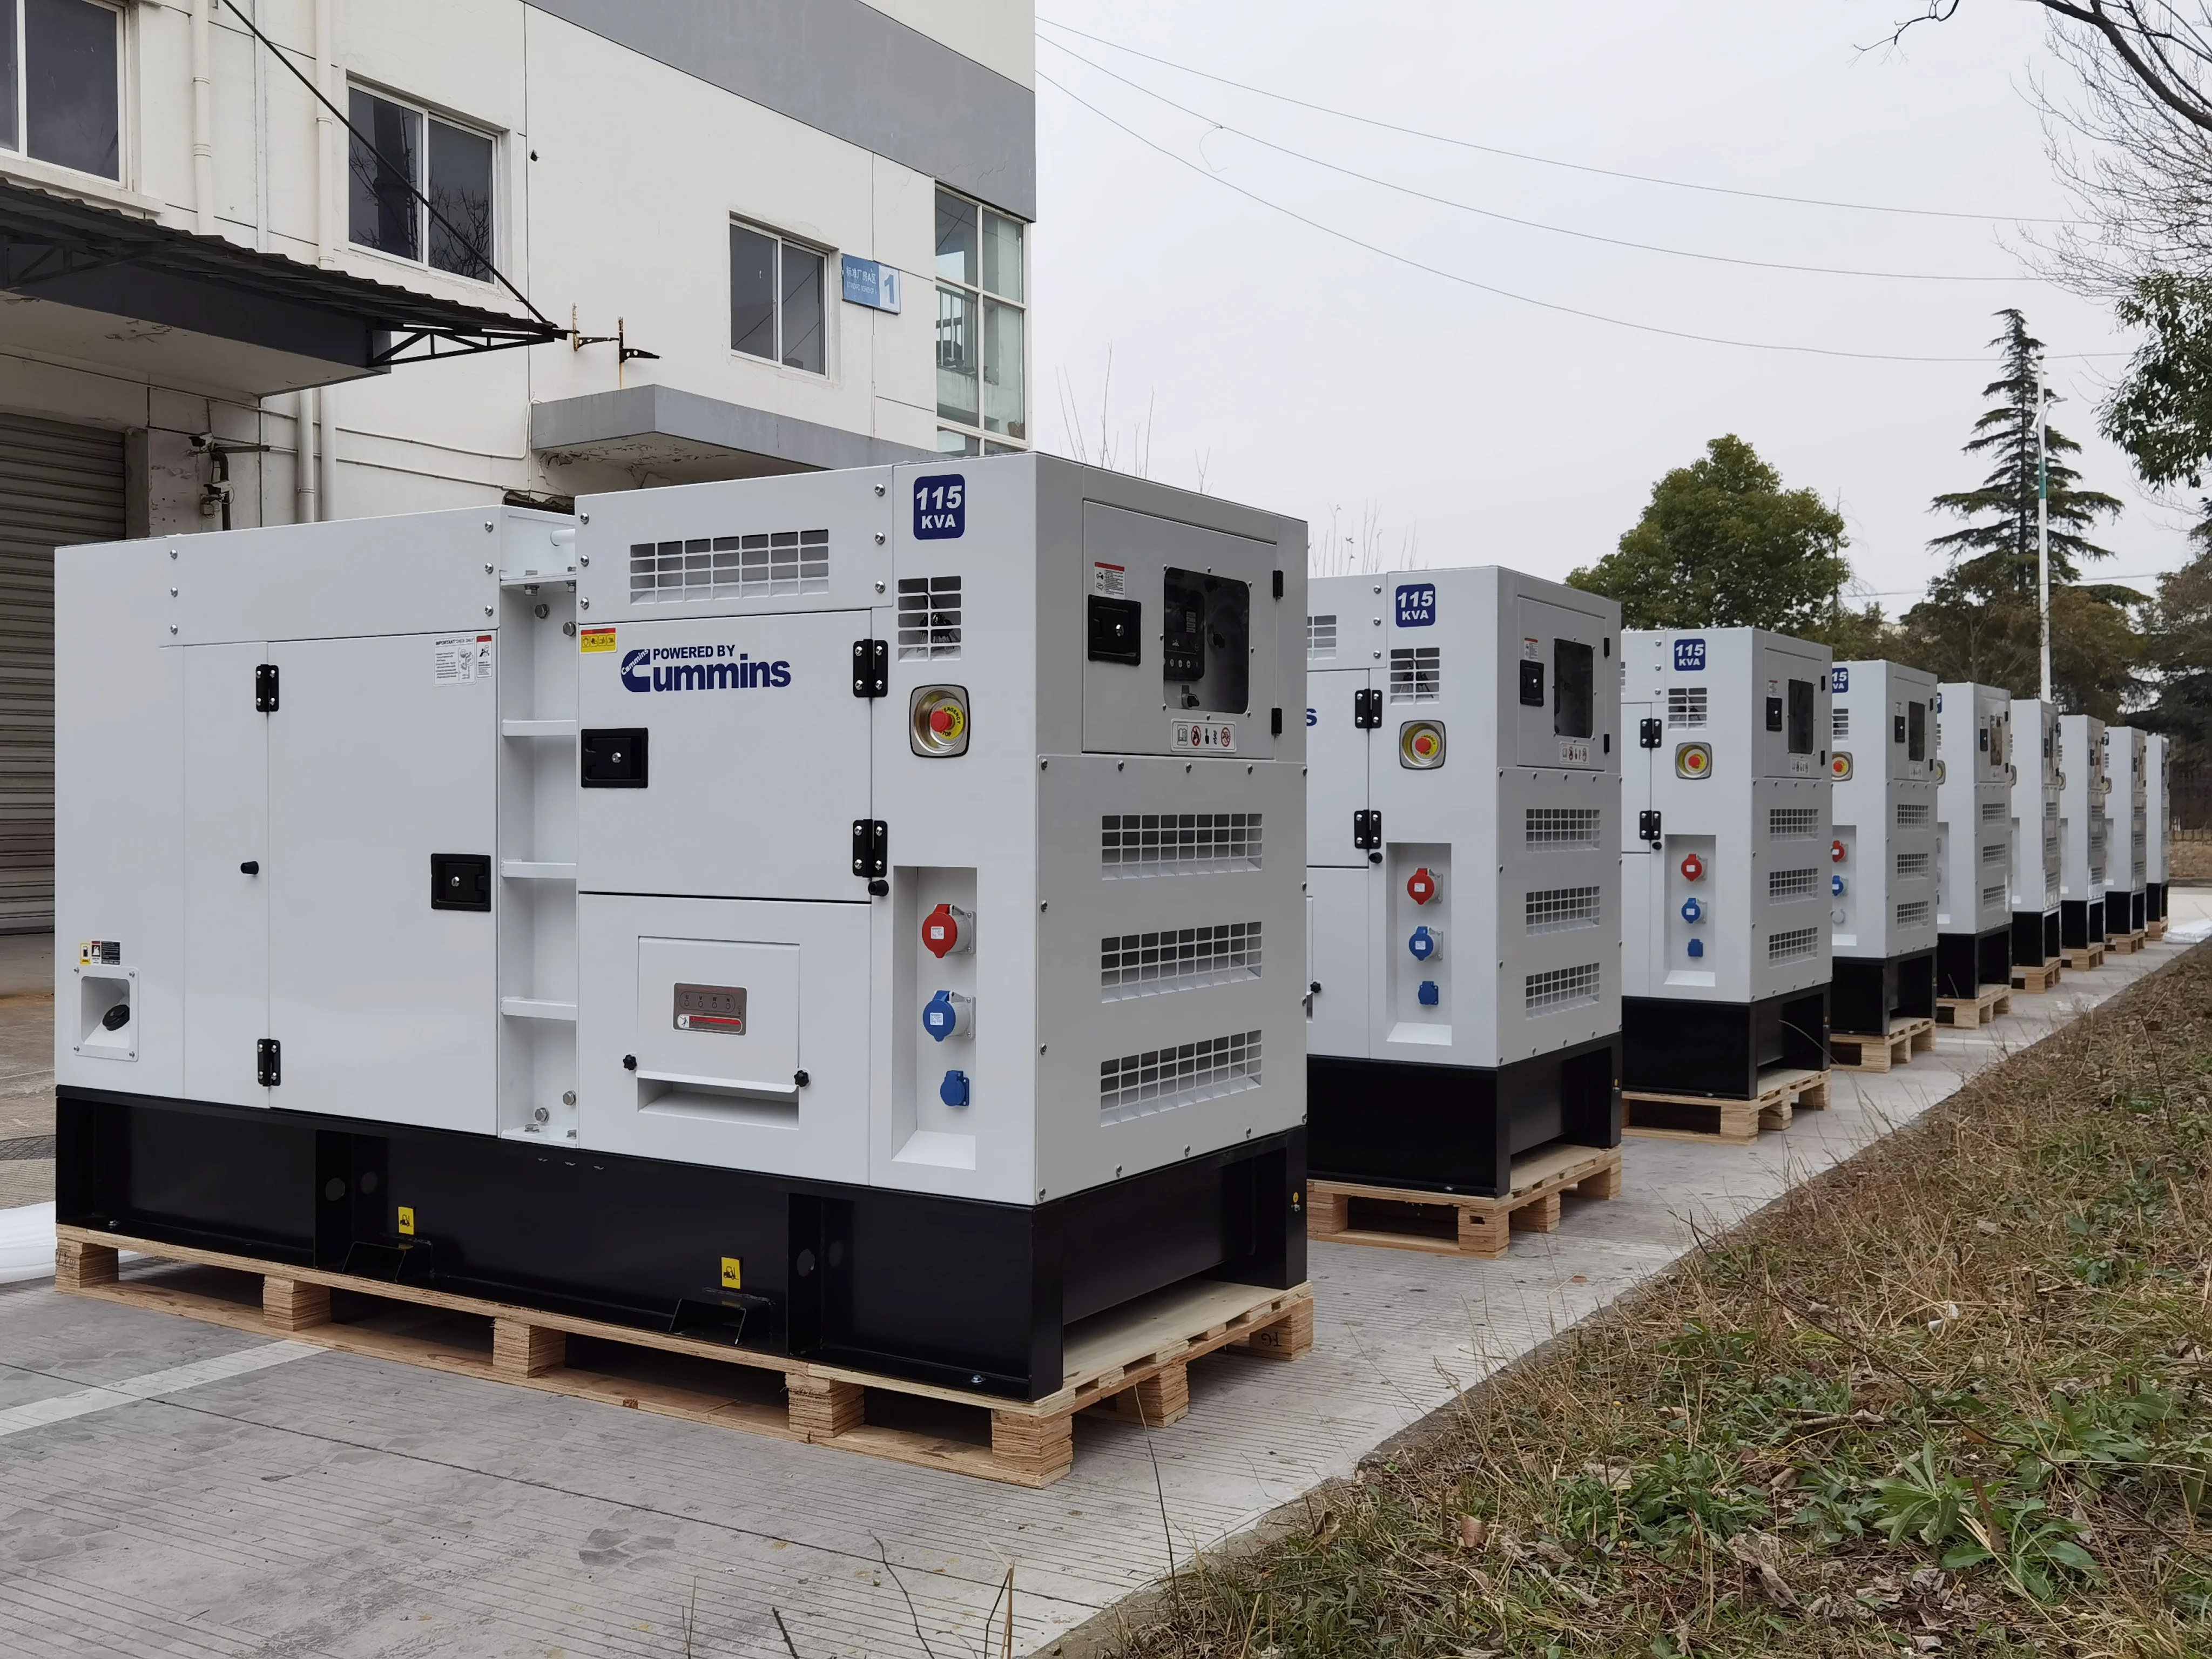 Бесшумный дизельный генератор 6bt5.9-G2 мощностью 100 кВт, 125 ква, на продажу, Филиппины